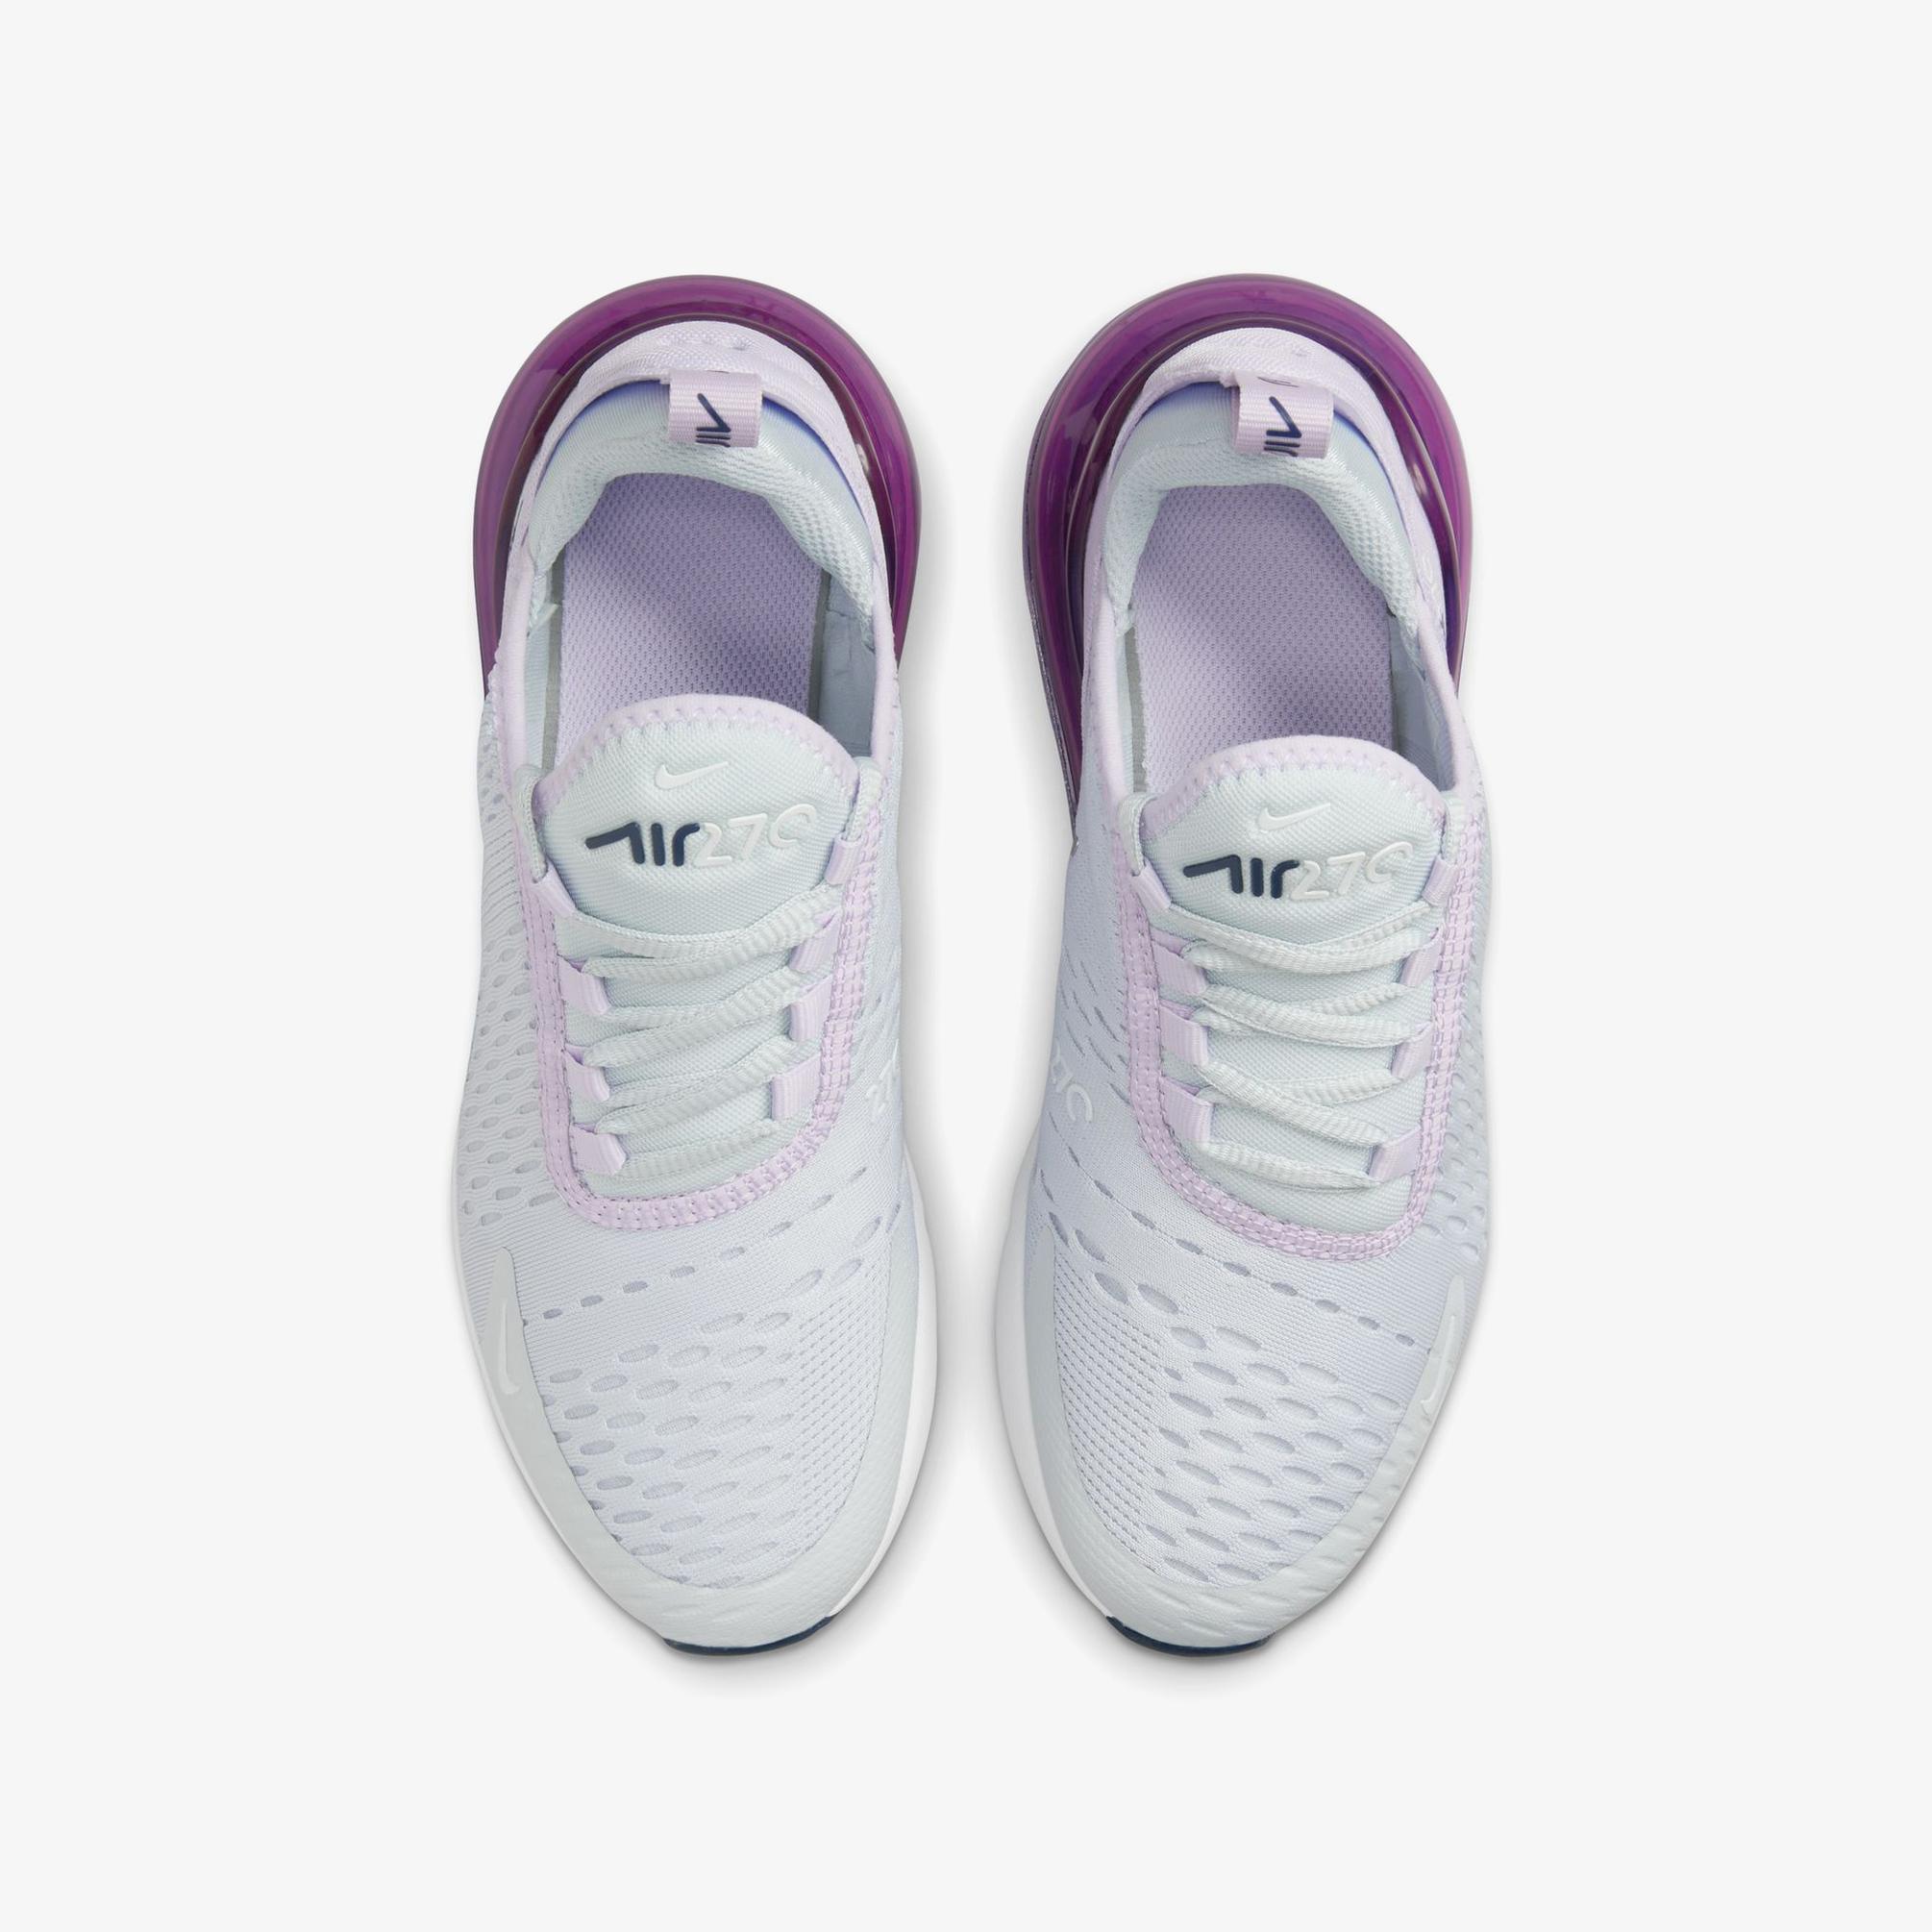  Nike Air Max 270 Kadın Beyaz Sneaker